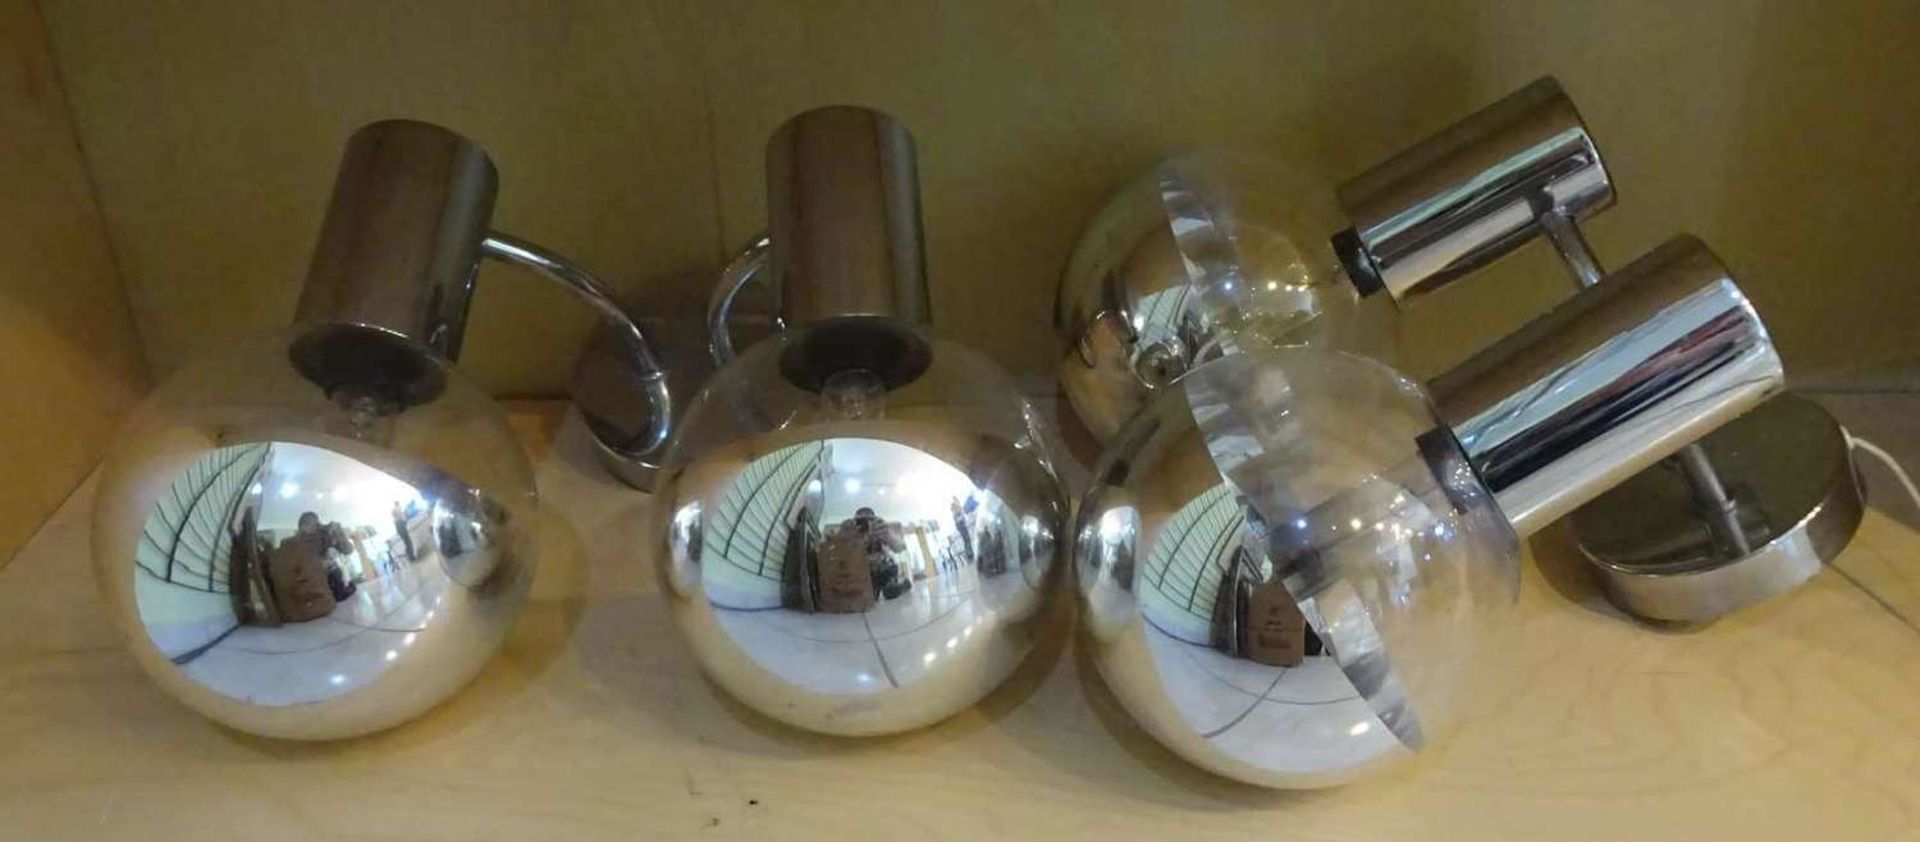 2 Retro Wandlampen, 70er Jahre, 2-strahlig. Guter Zustand, bitte besichtigen!